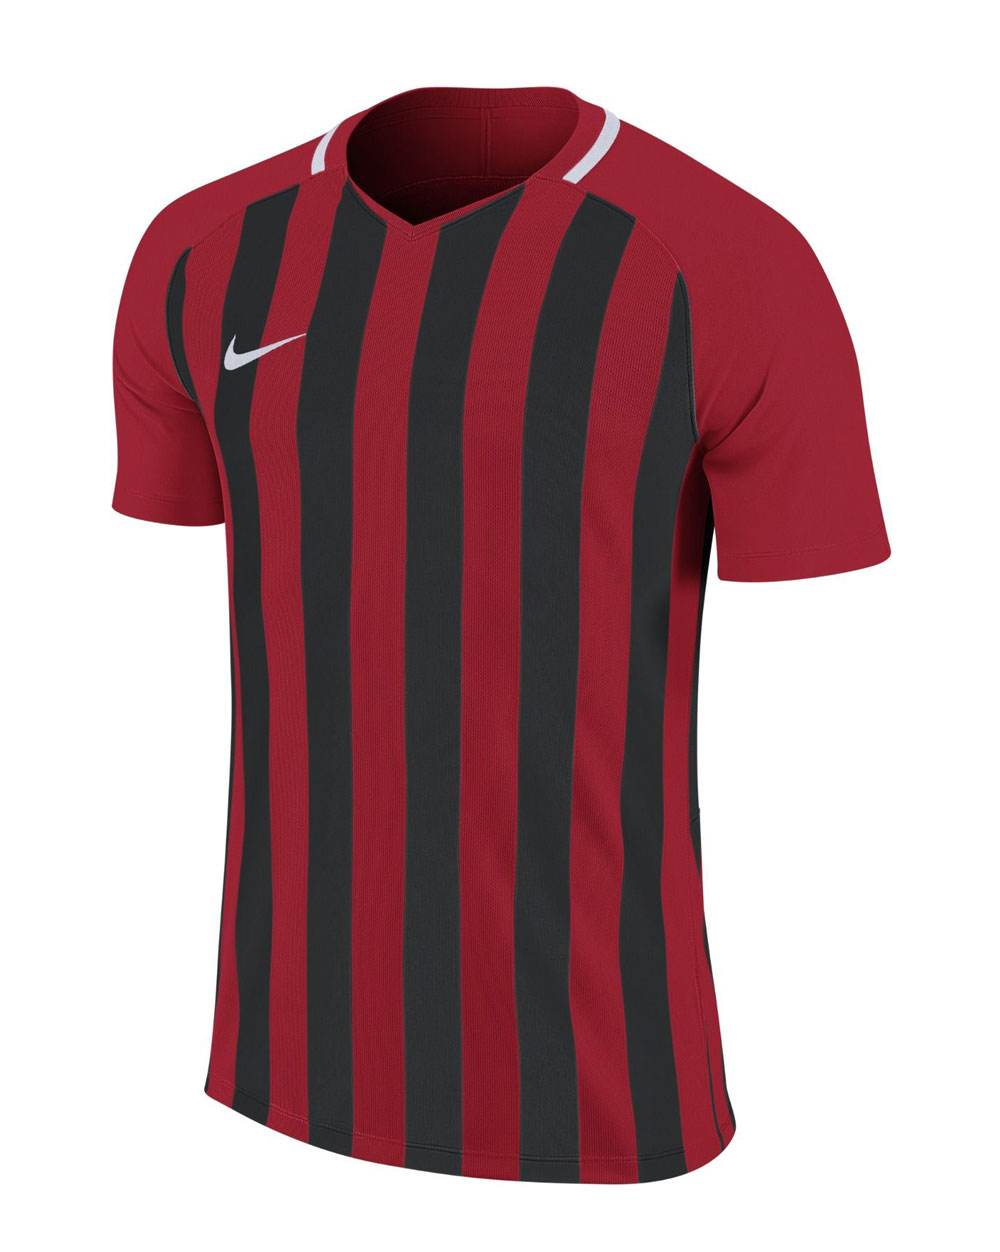 camisetas de futbol rojo blanco y negro - 57% descuento - inmediasoft.com